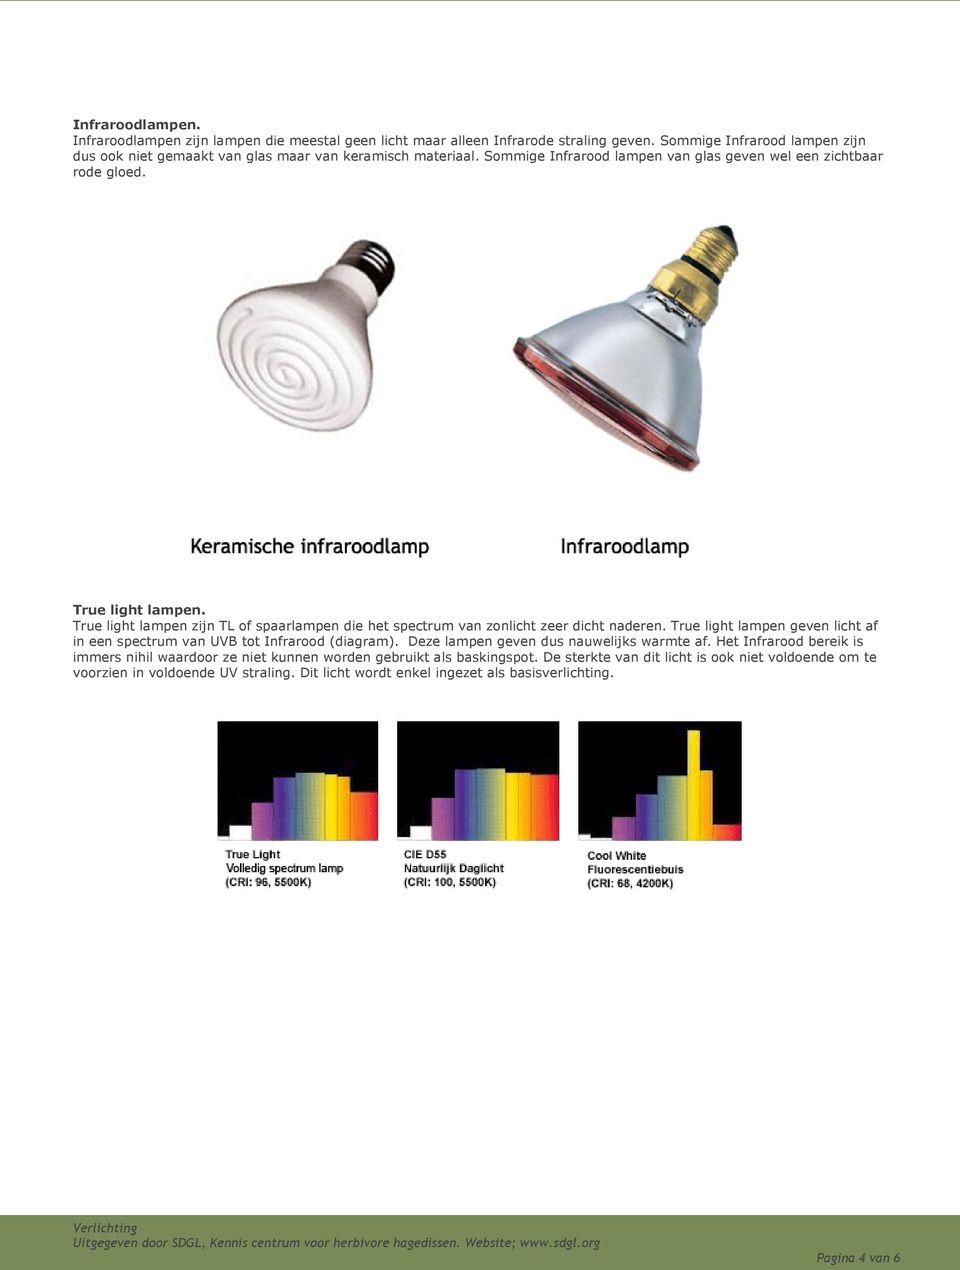 True light lampen zijn TL of spaarlampen die het spectrum van zonlicht zeer dicht naderen. True light lampen geven licht af in een spectrum van UVB tot Infrarood (diagram).